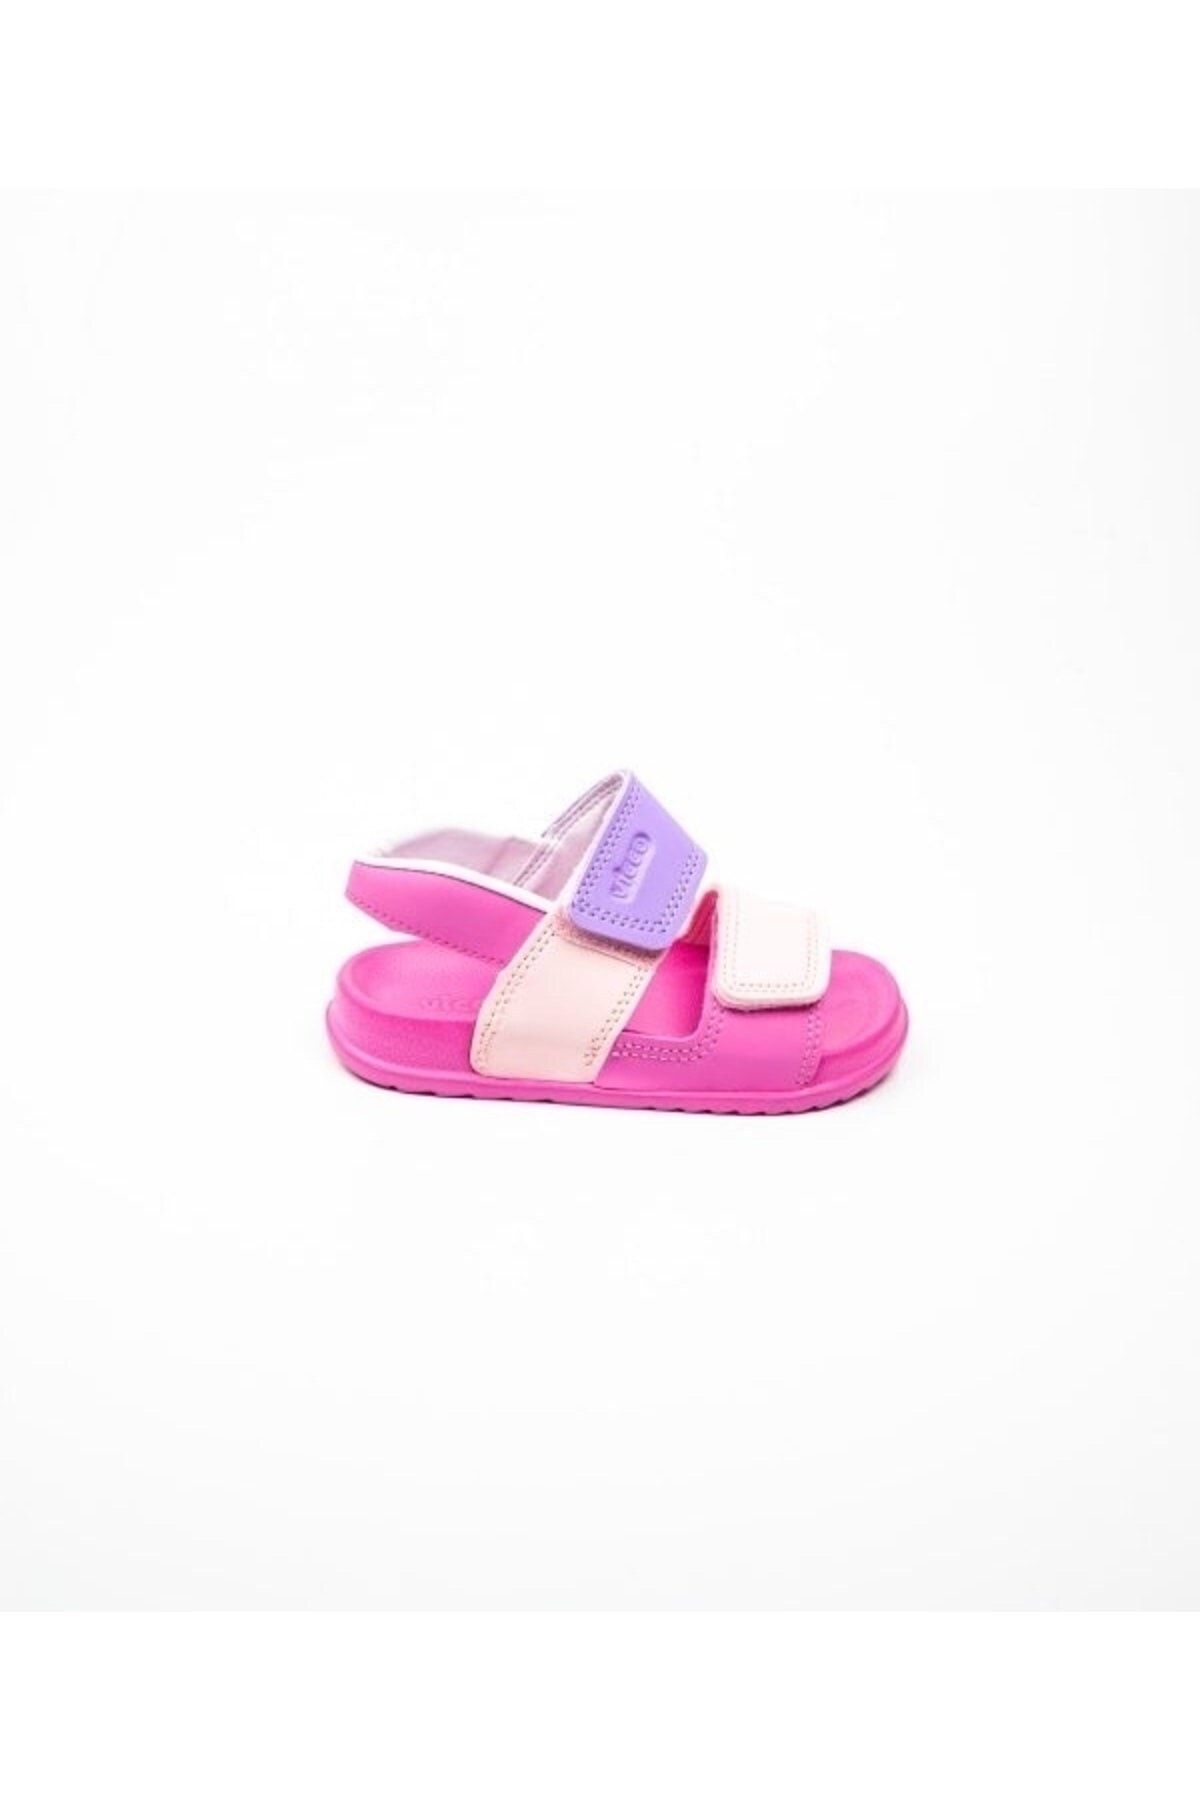 Vicco Yeni Sezon Unisex Hafif Eva Taban Çocuk Sandalet Modeli - Fuşya